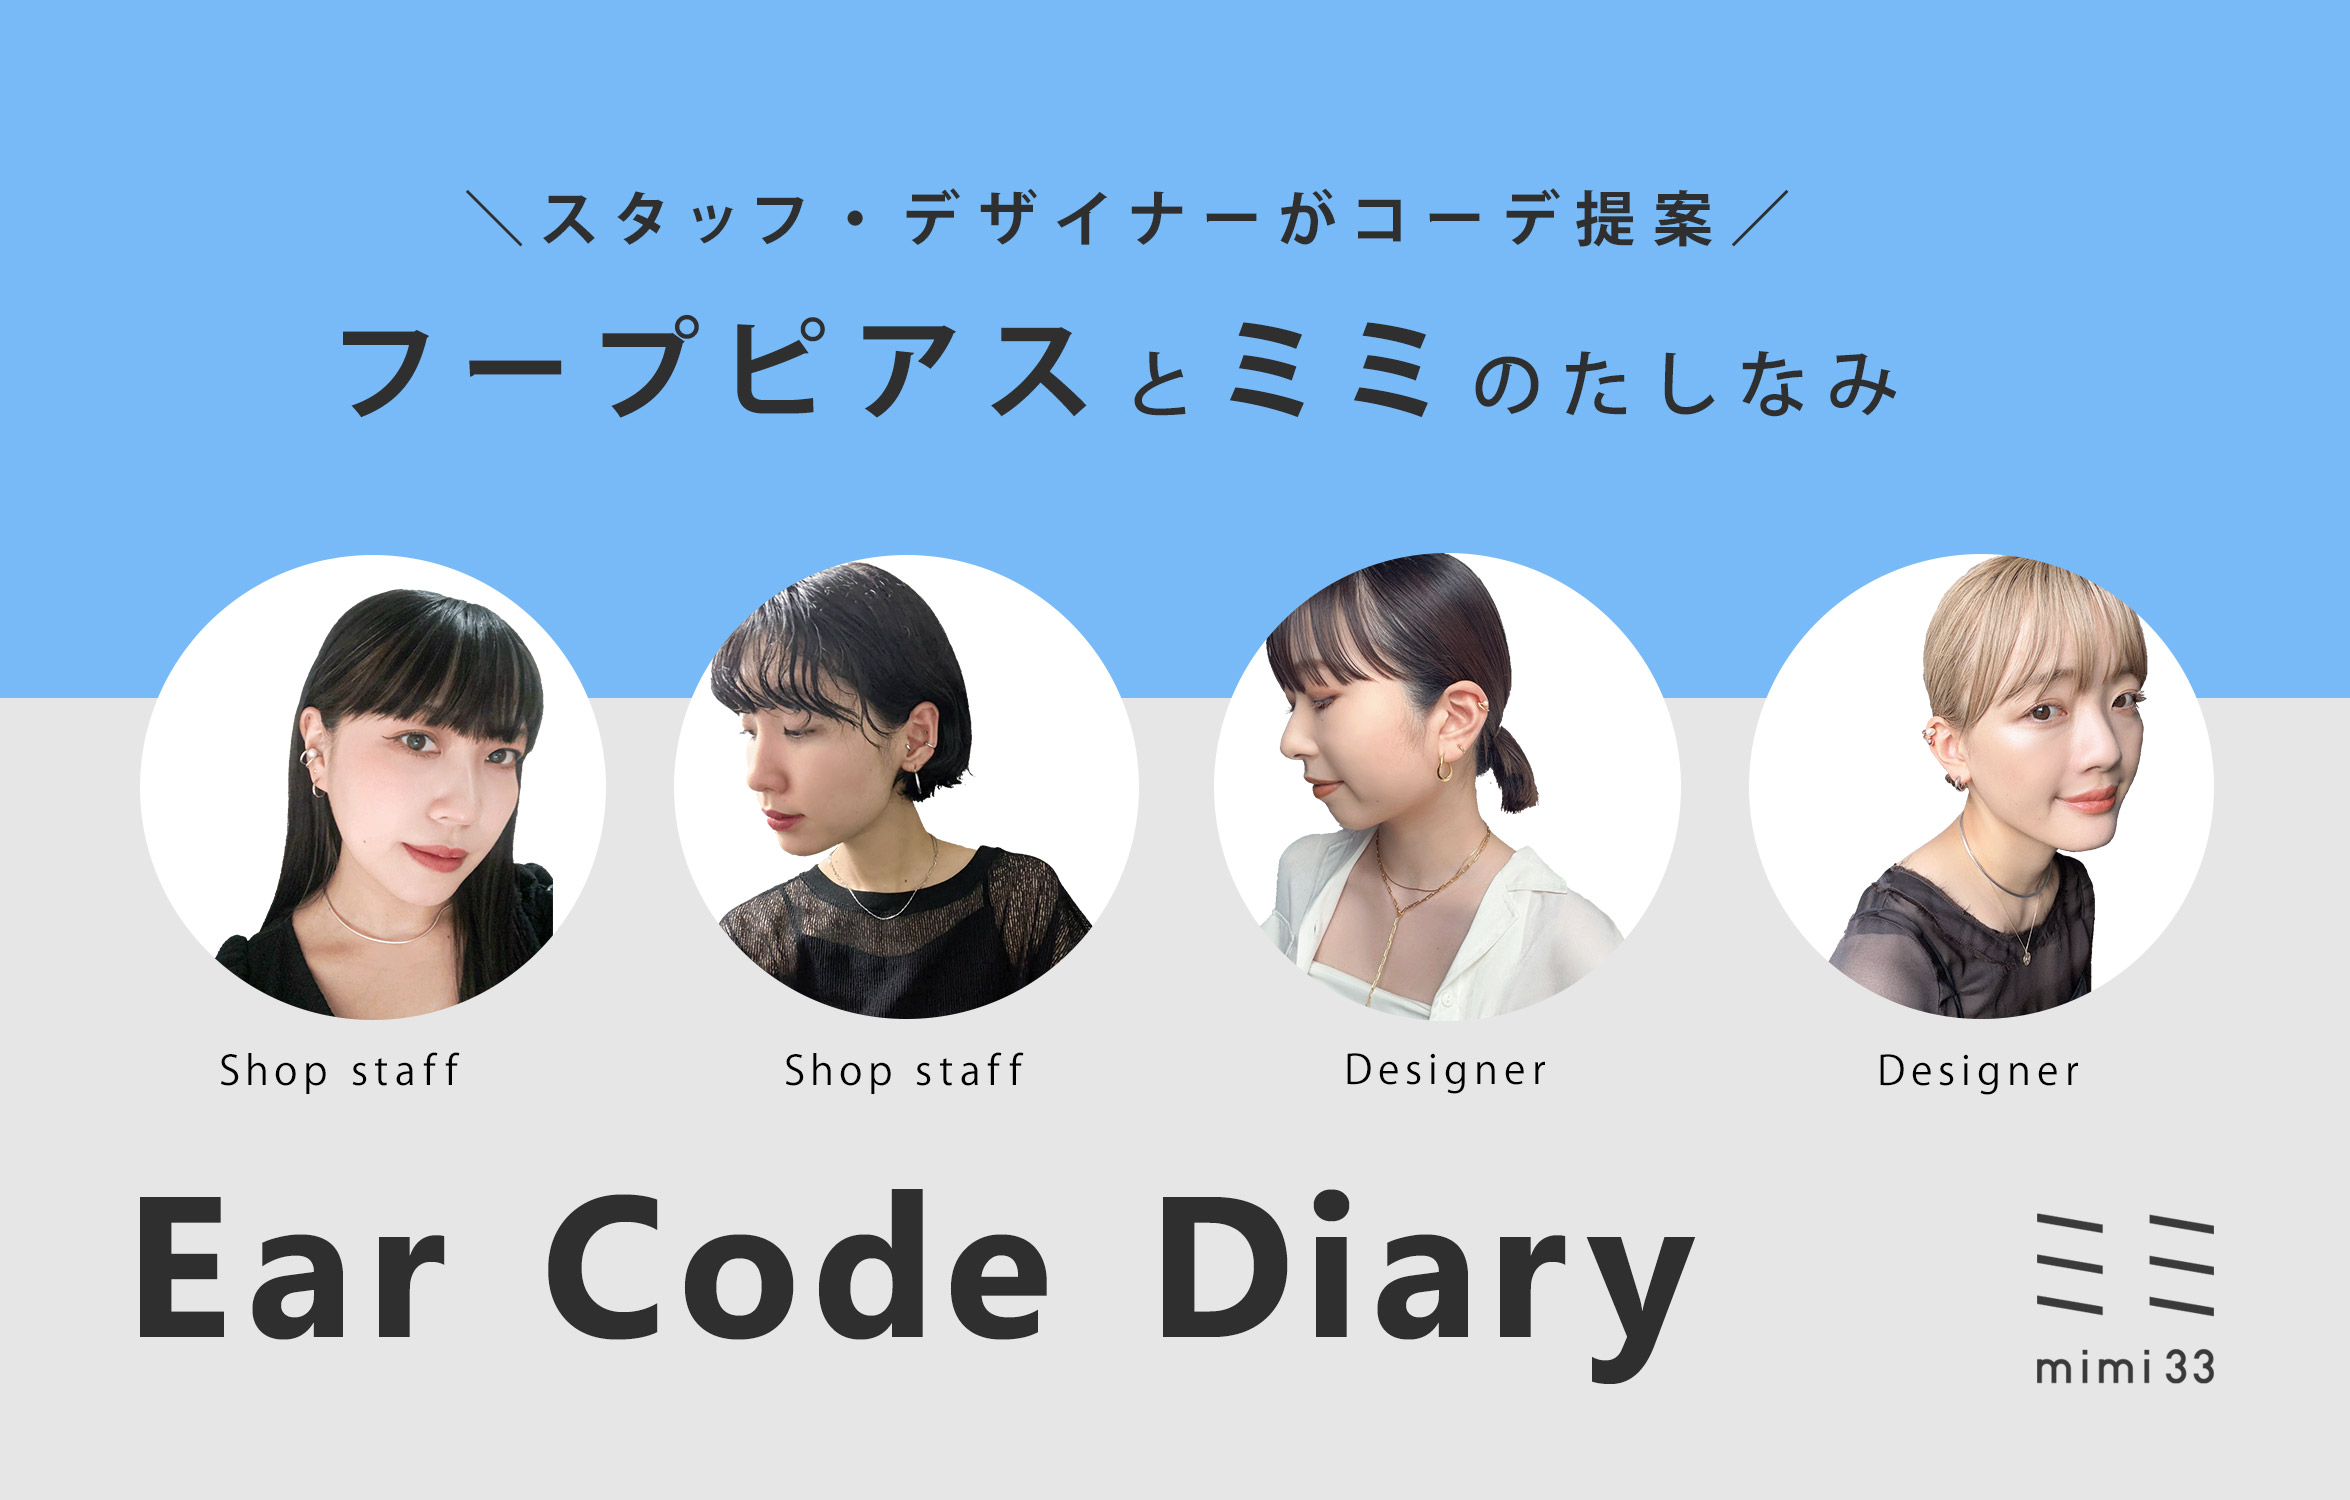 【mimi33】Ear Code Diary -フープピアスのたしなみ-